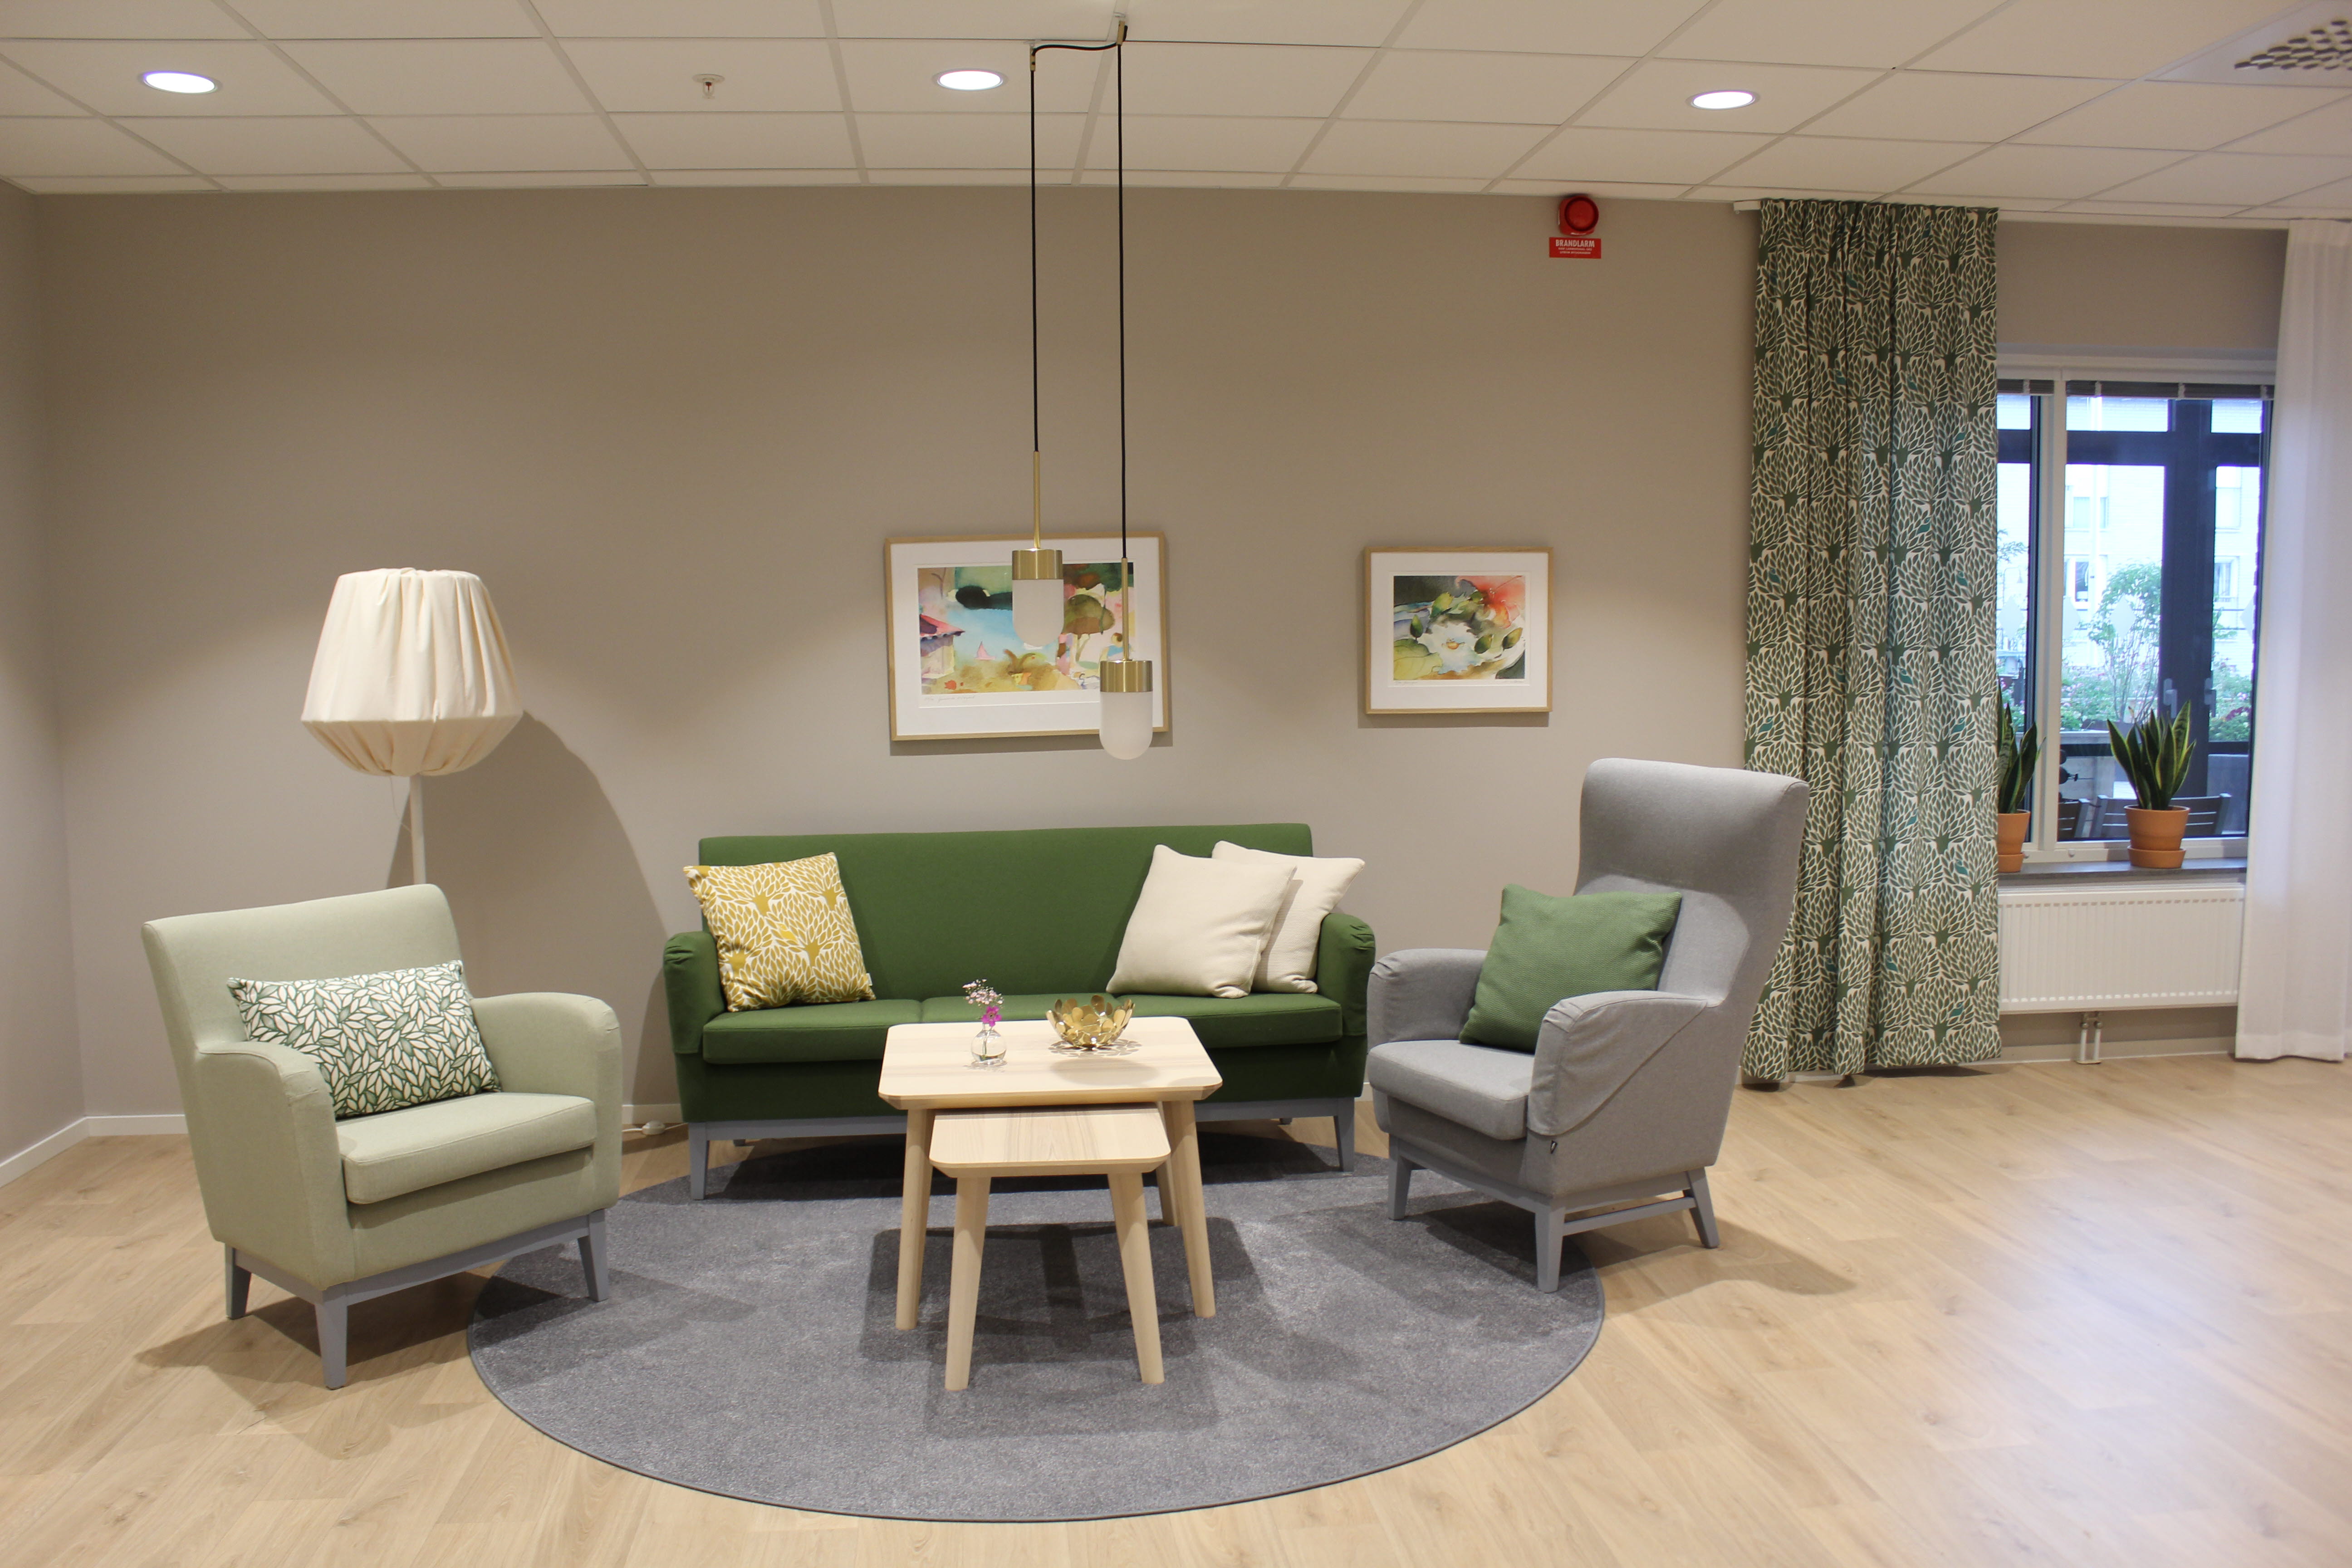 Del av en gemensamhetslokal med en grön soffa och två gröna och gråa fåtöljer med